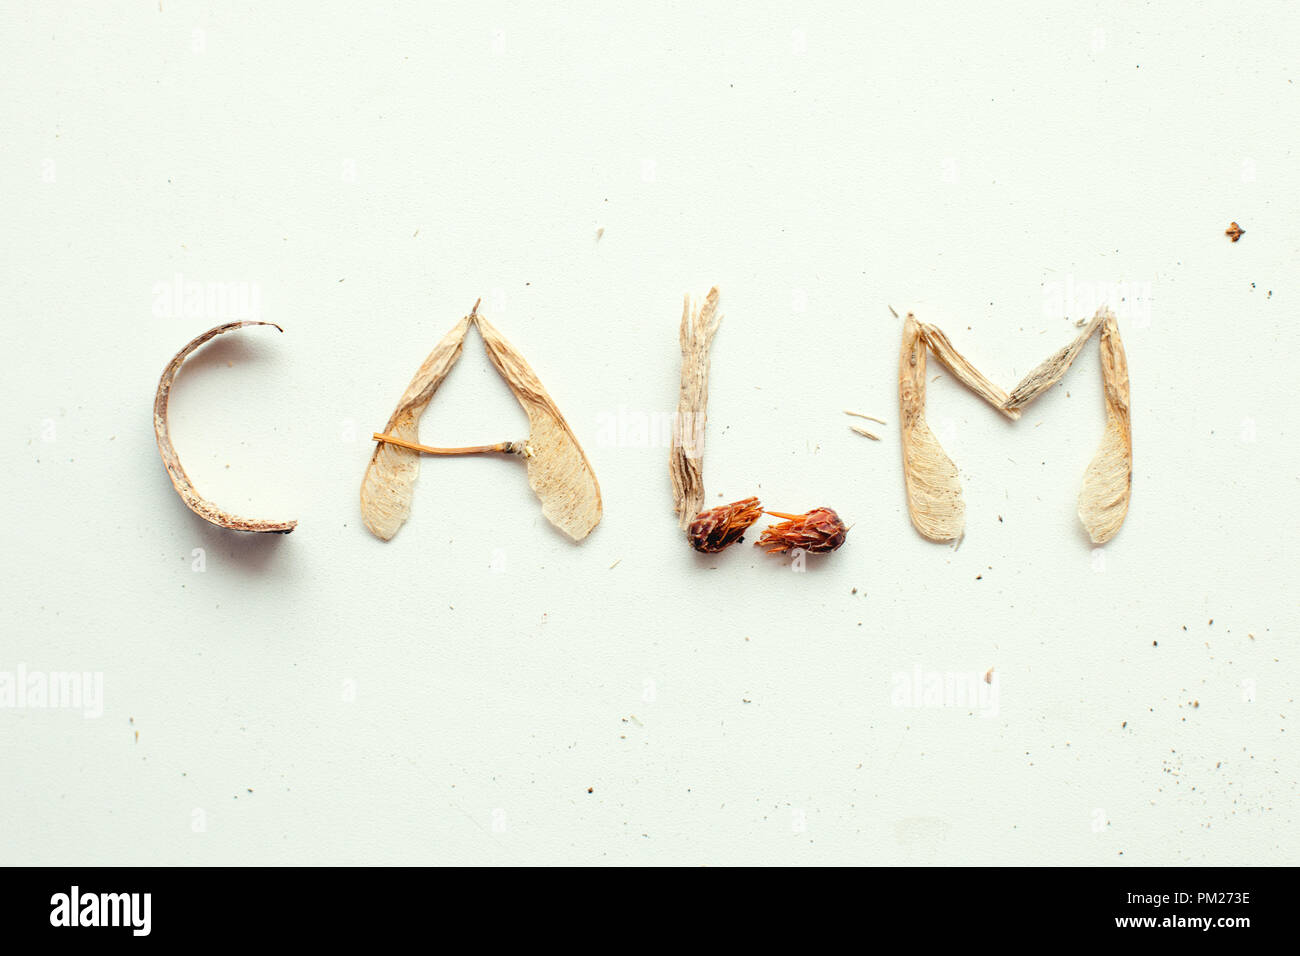 Mindfulness calmness desenchufar el concepto, la palabra calma desde el bosque natural material Foto de stock